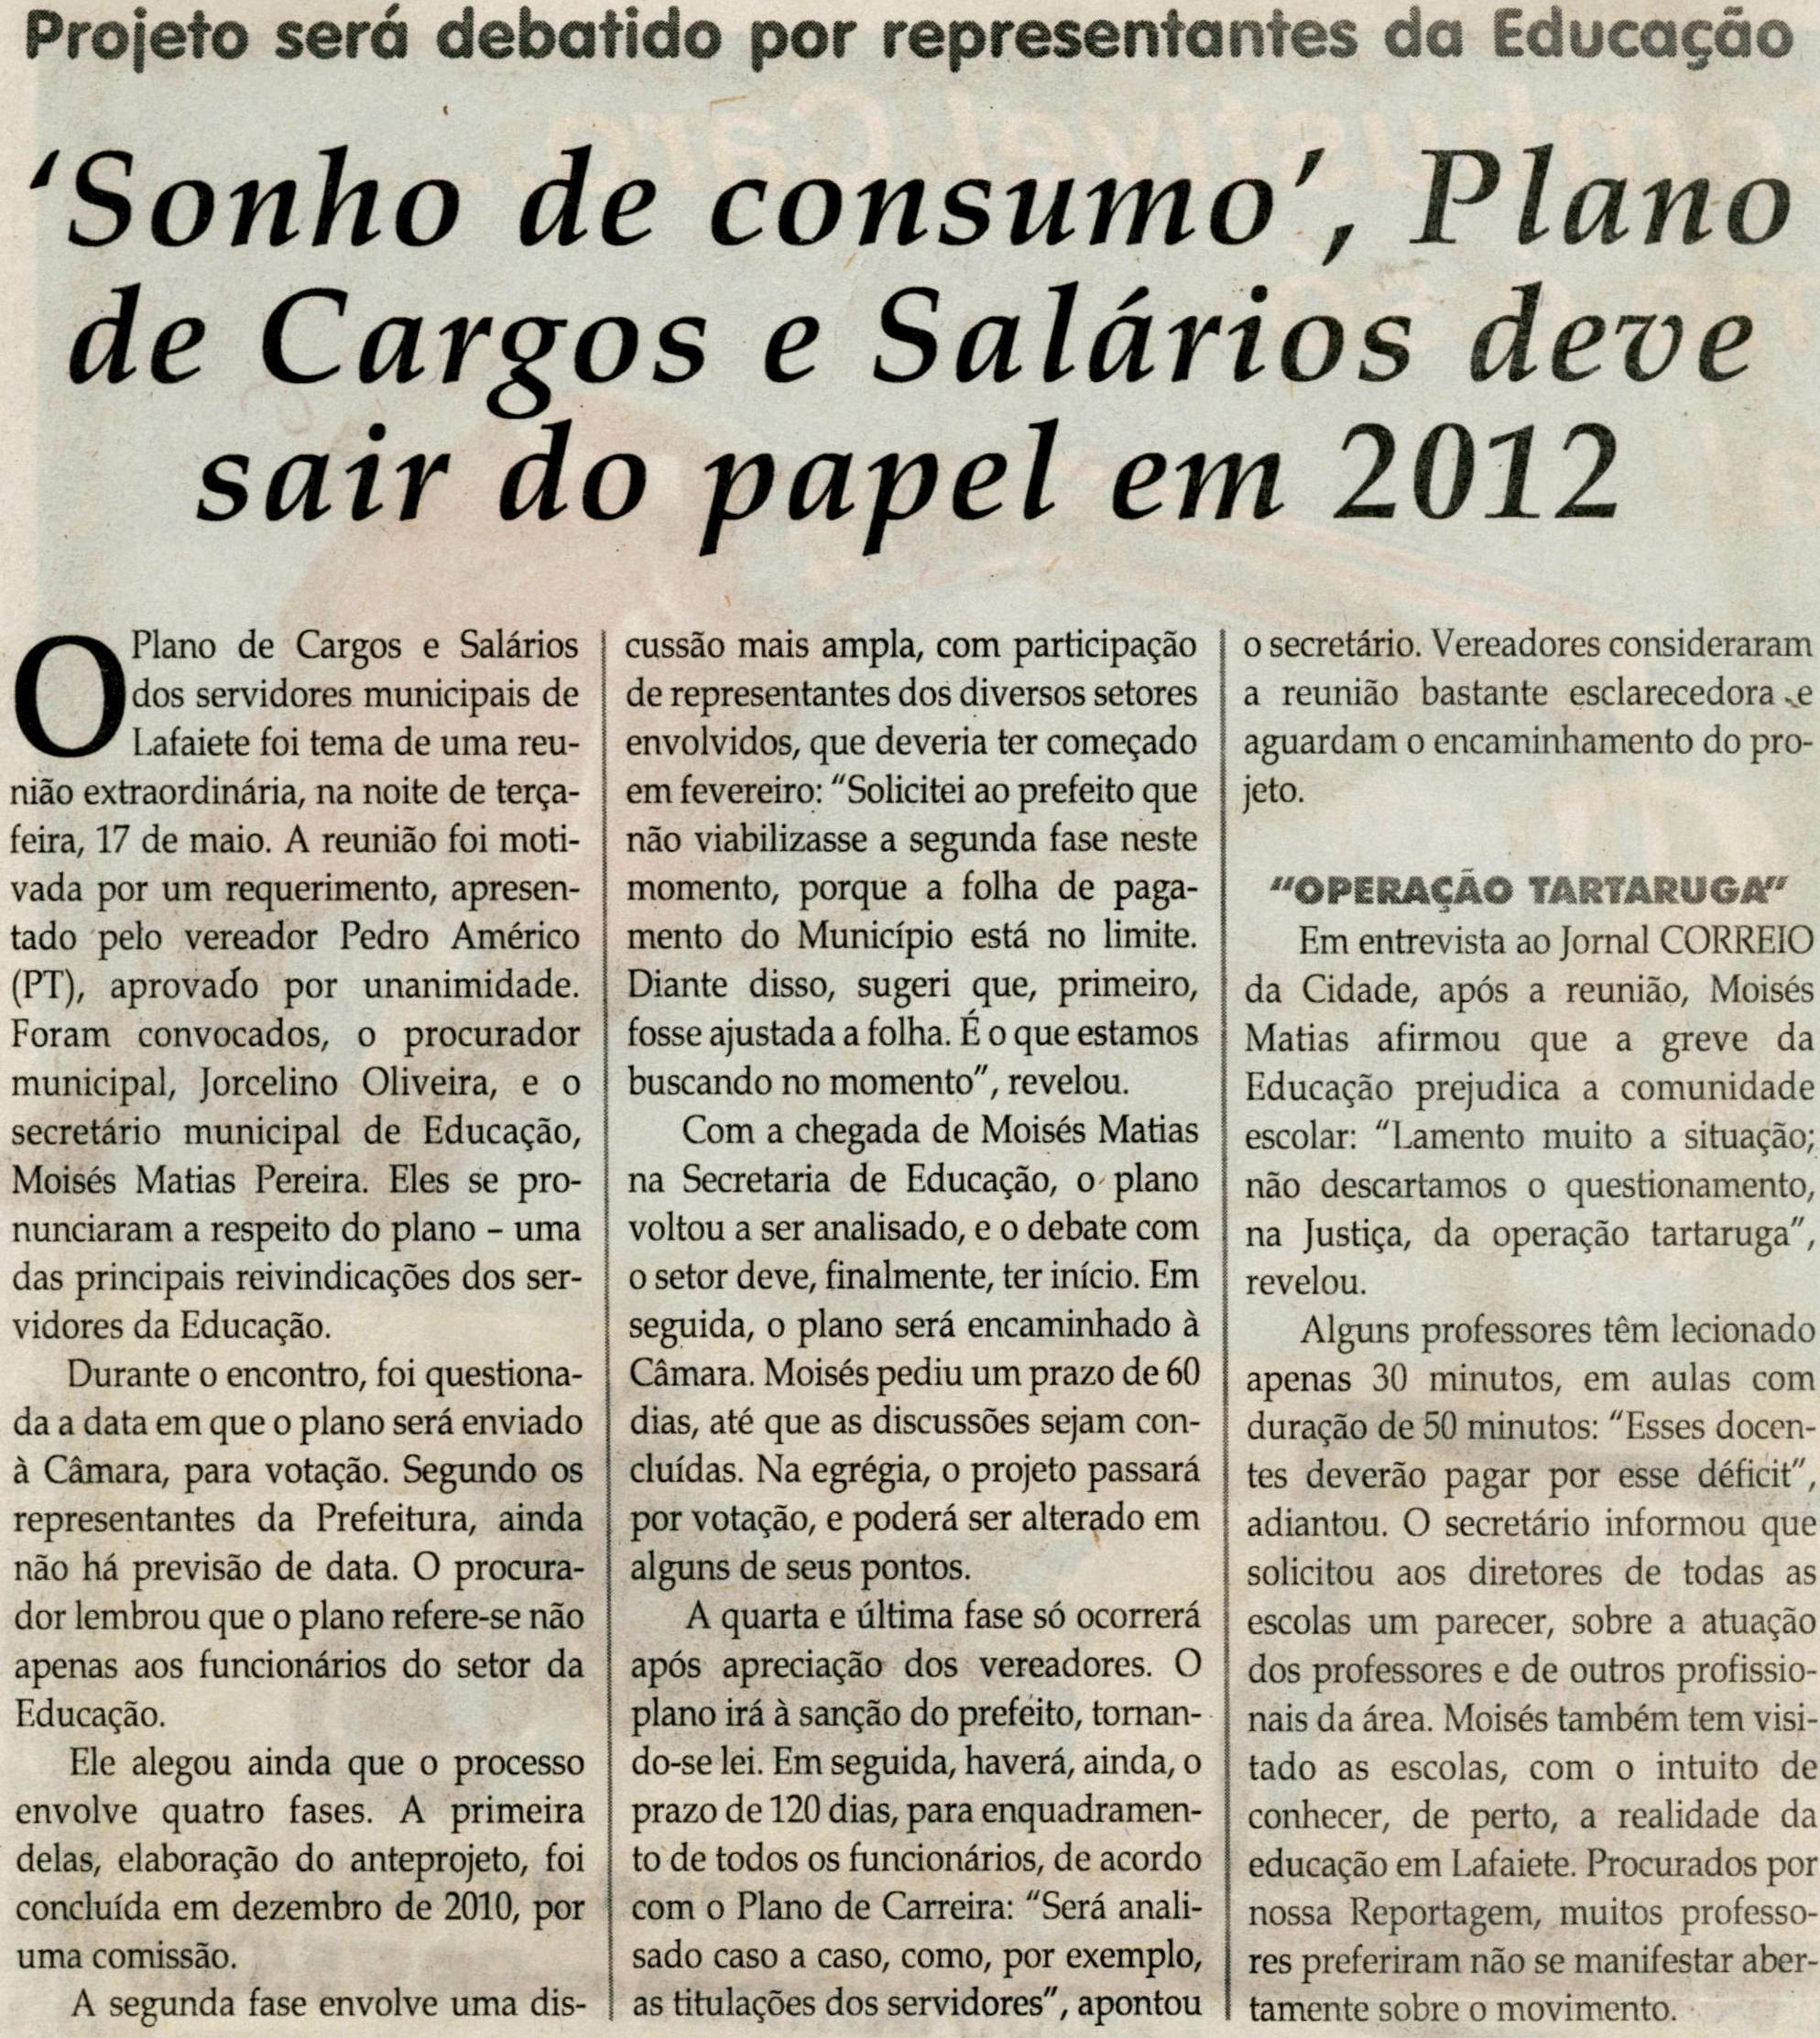 Sonho de Consumo, Plano de Cargas e Salários deve sair do papel. Jornal Correio da Cidade, Conselheiro, 21 mai. 2011, p. 4.